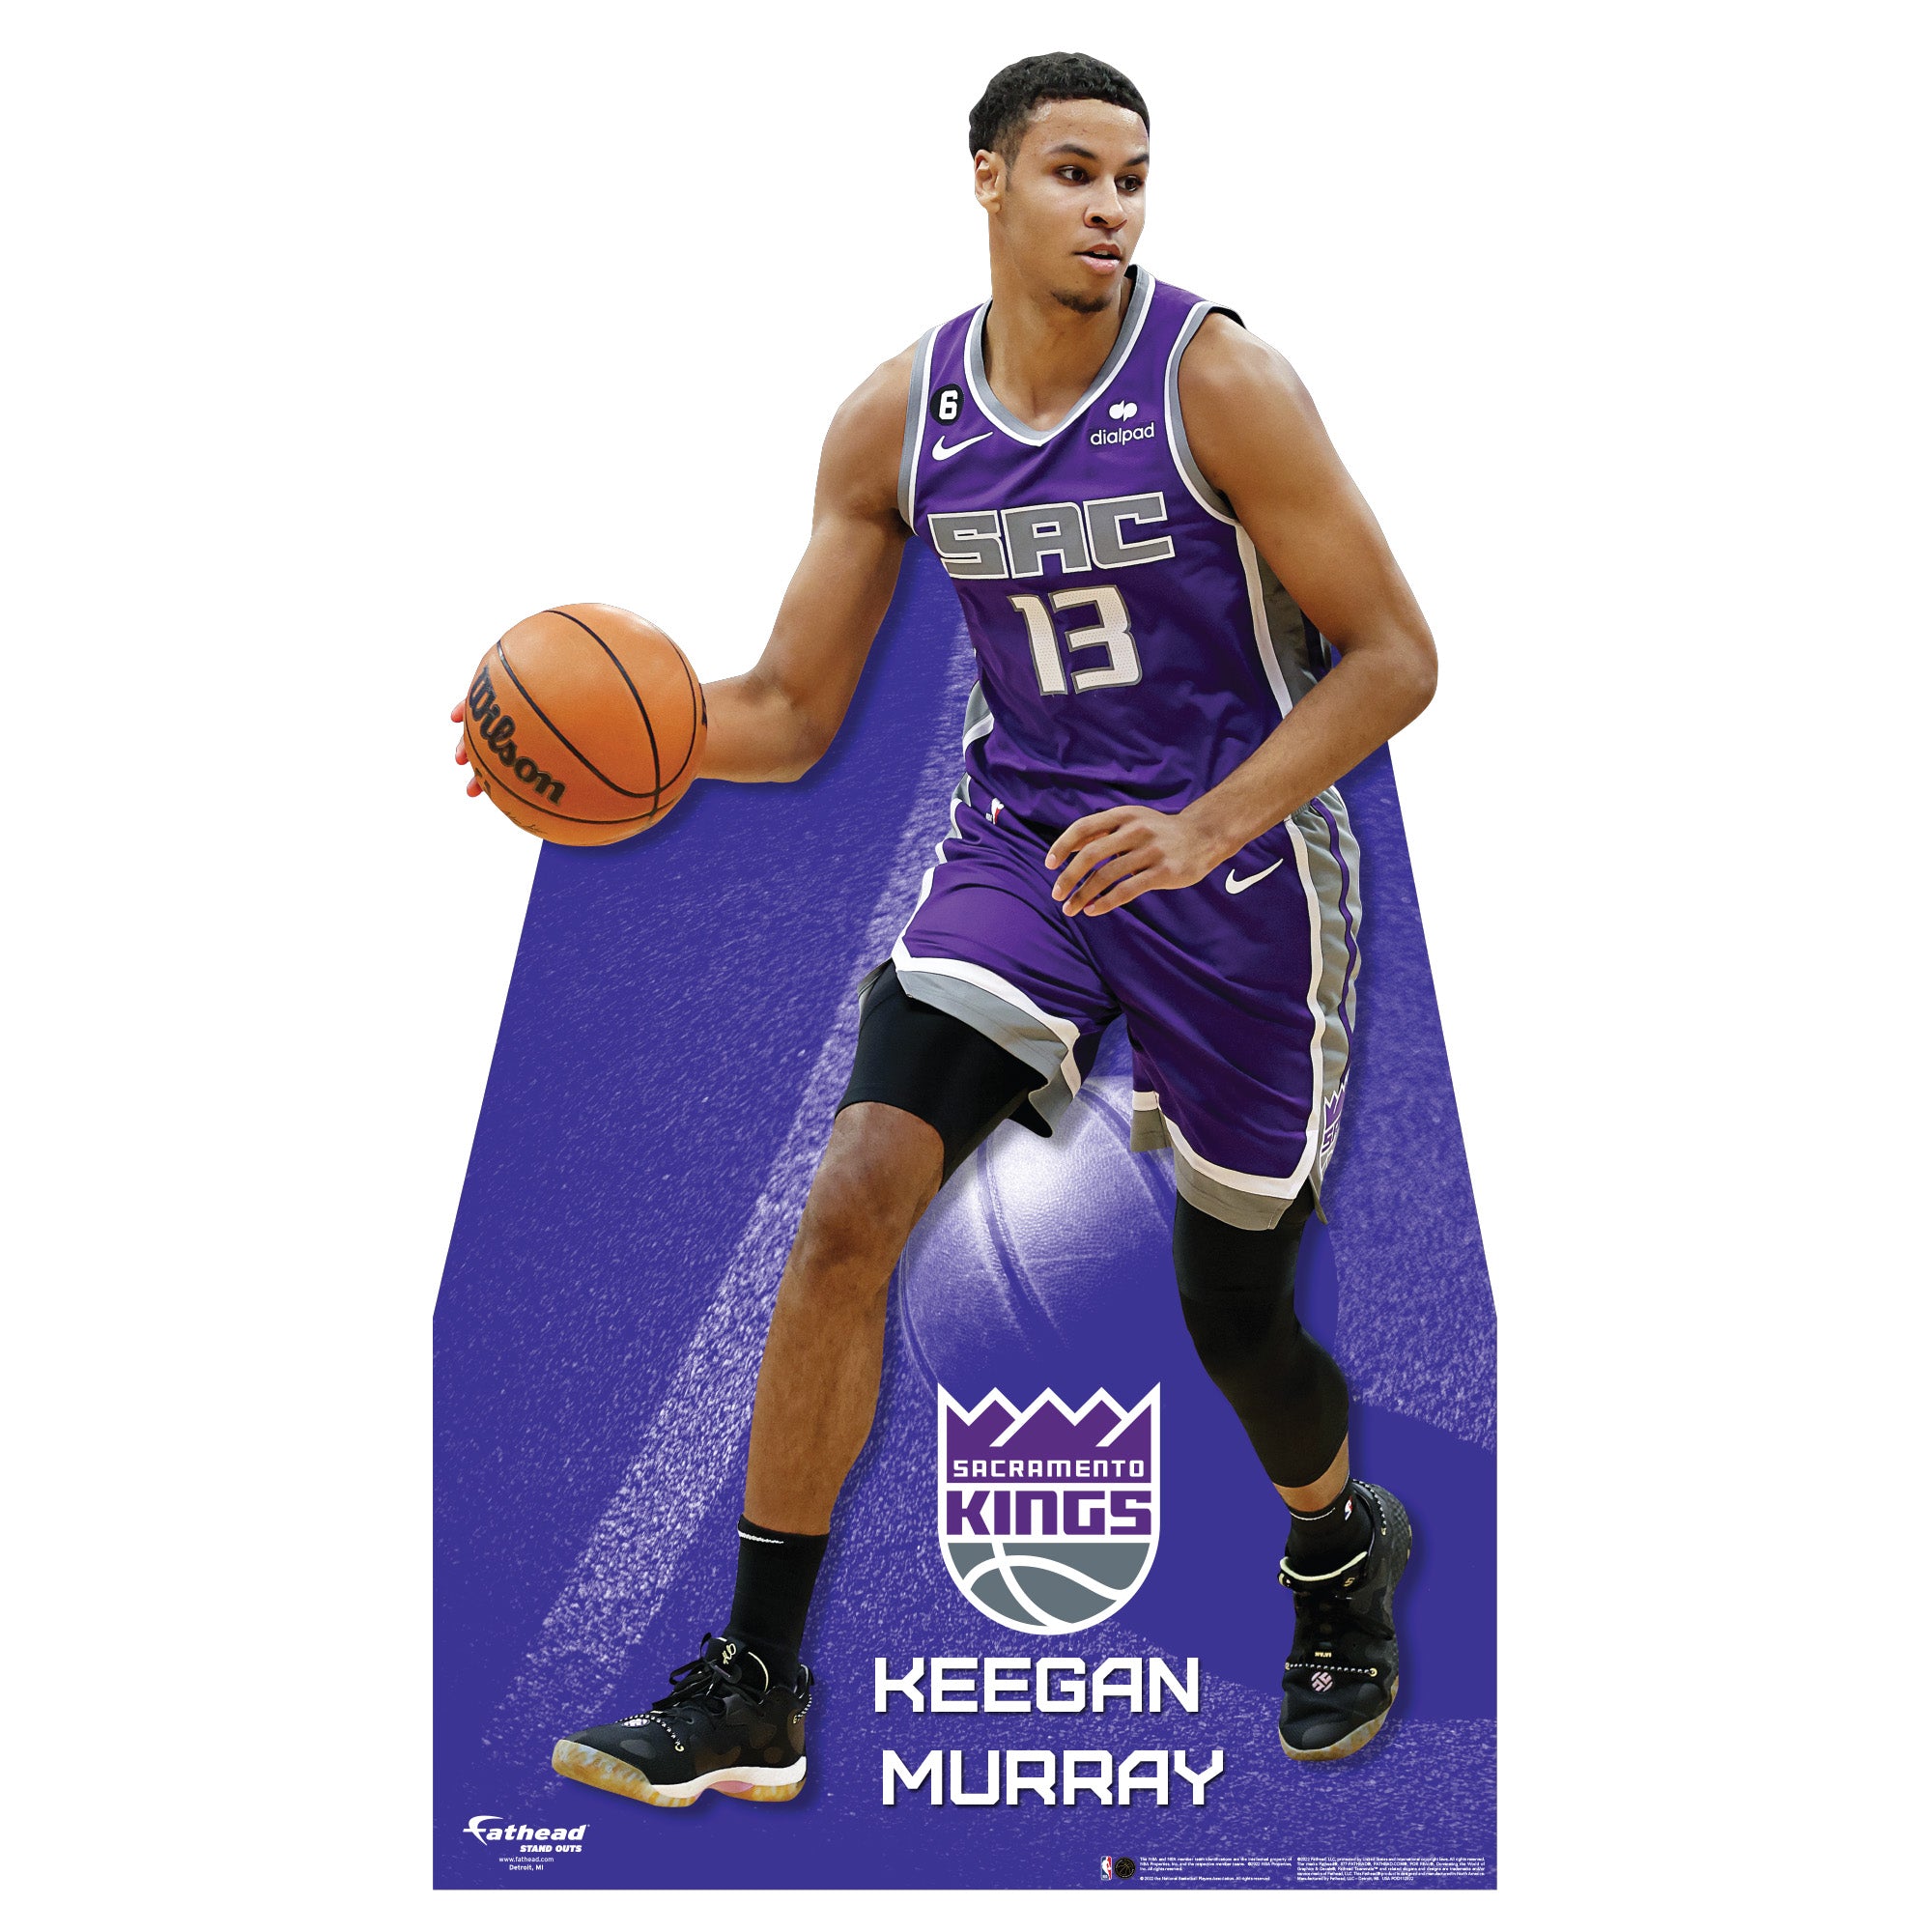 Keegan Murray Basketball Paper Poster Kings 4 - Keegan Murray